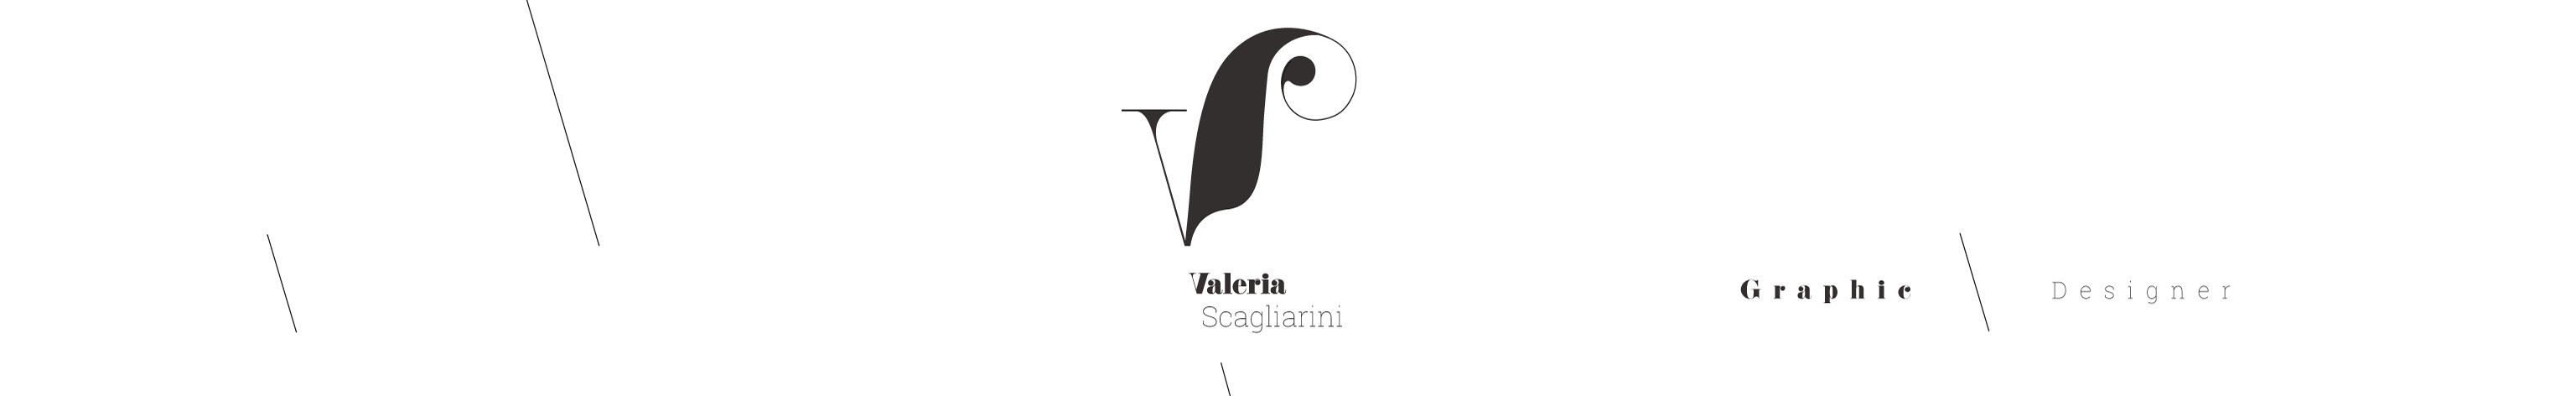 Valeria Scagliarini's profile banner